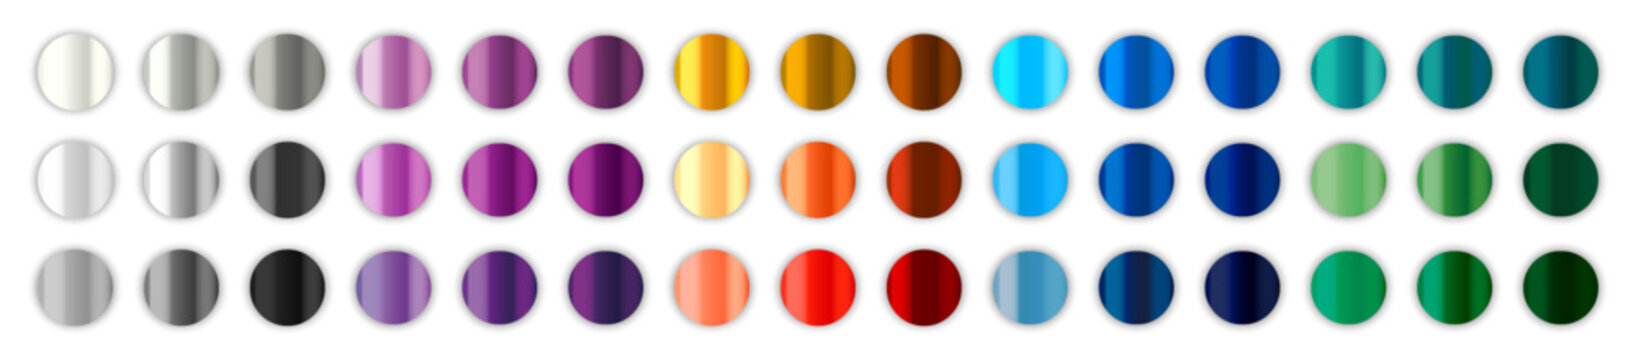 Metal gradient color palette. Chrome texture surface. Metal gradients collection.